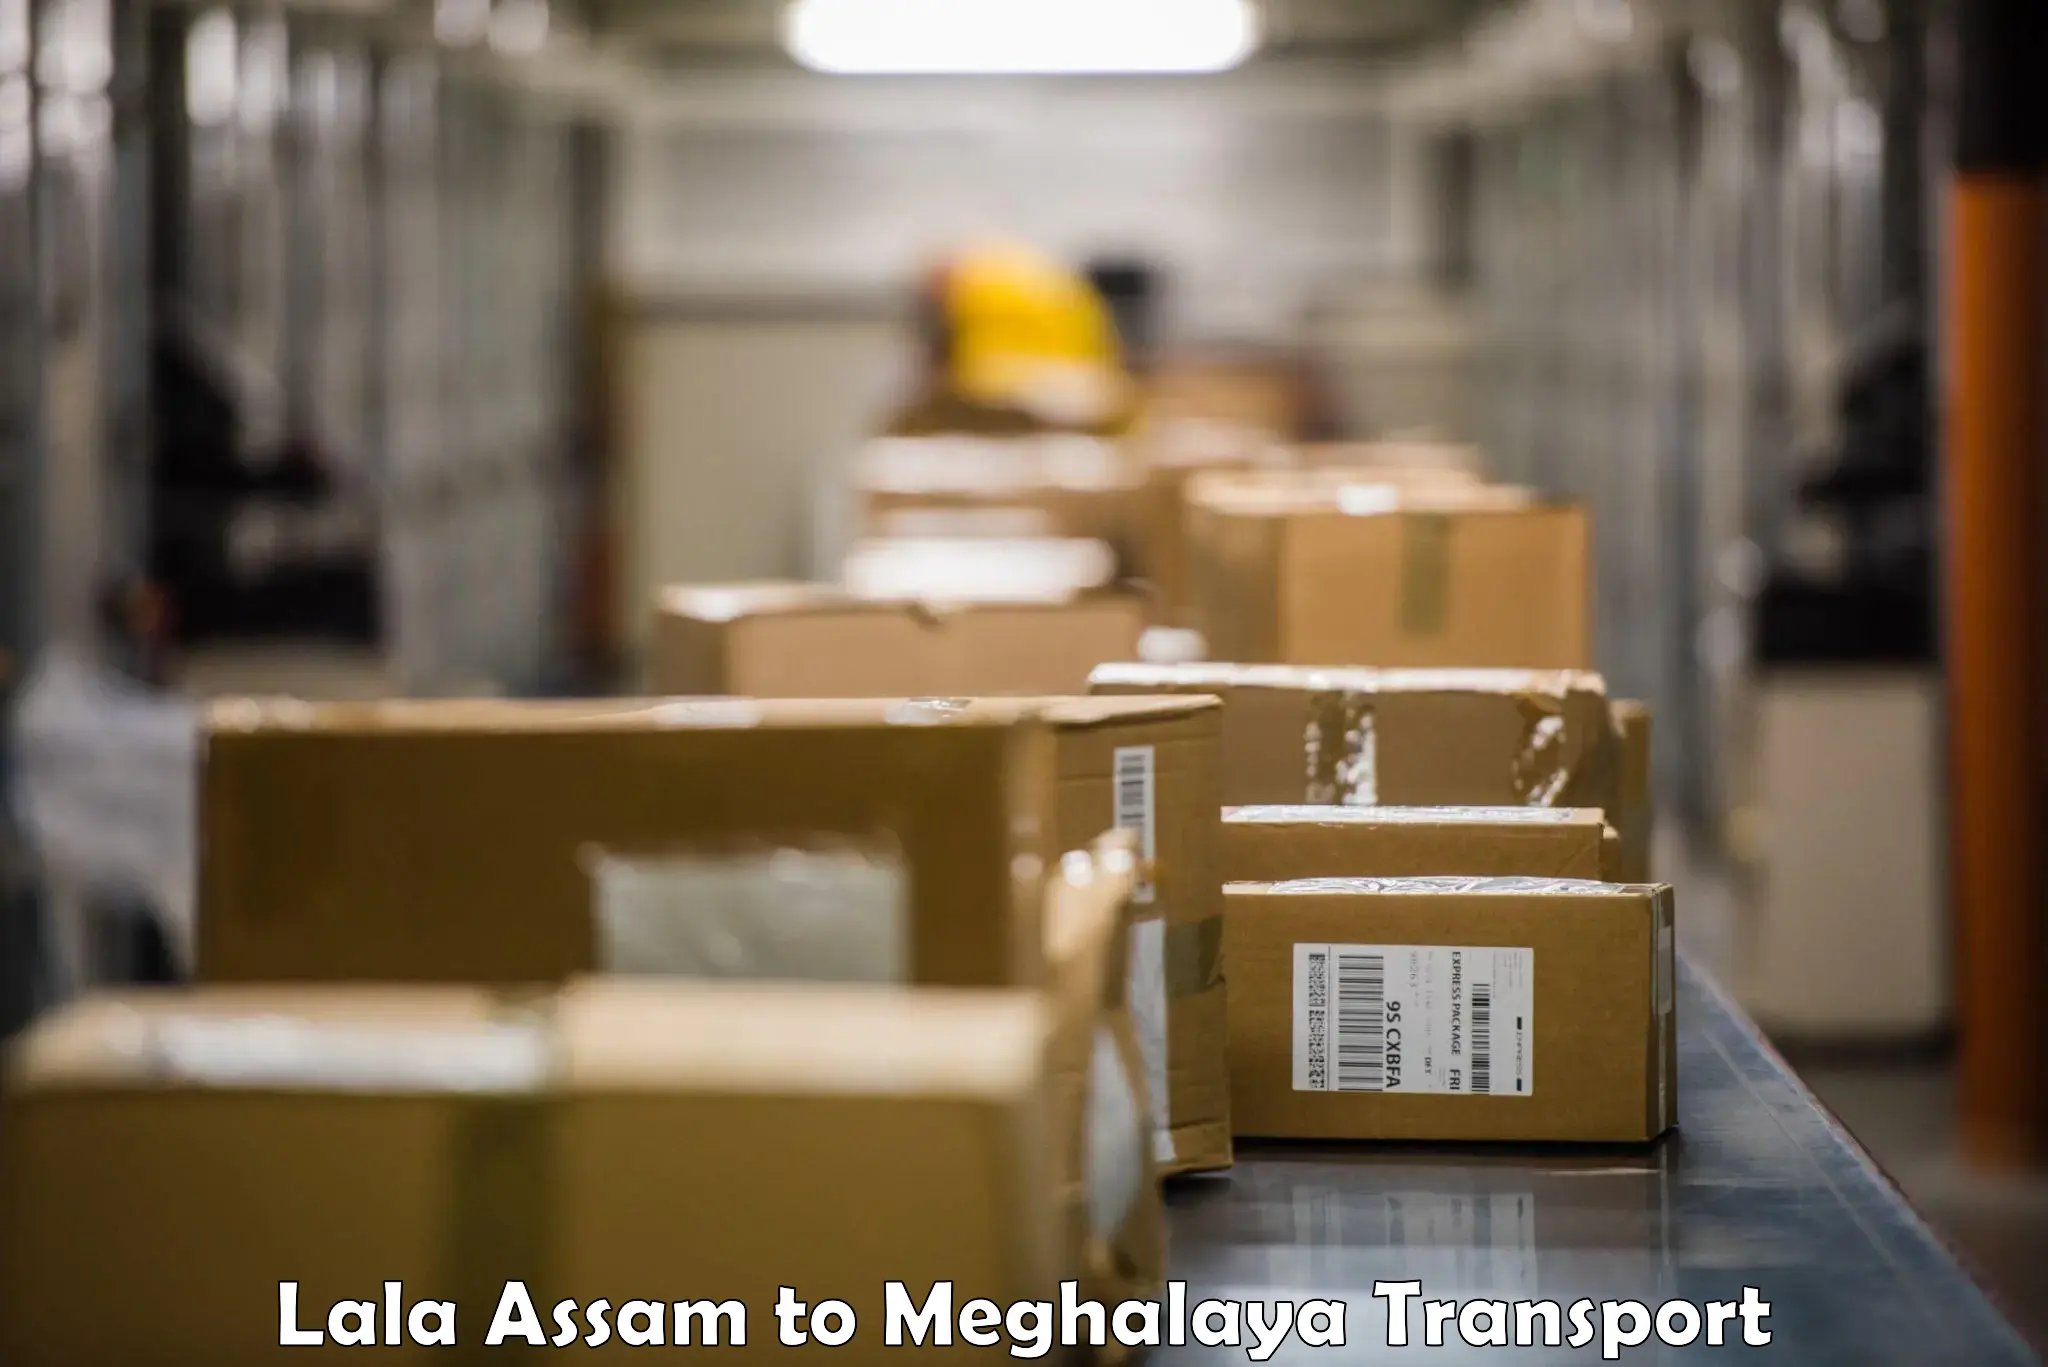 Delivery service Lala Assam to Meghalaya